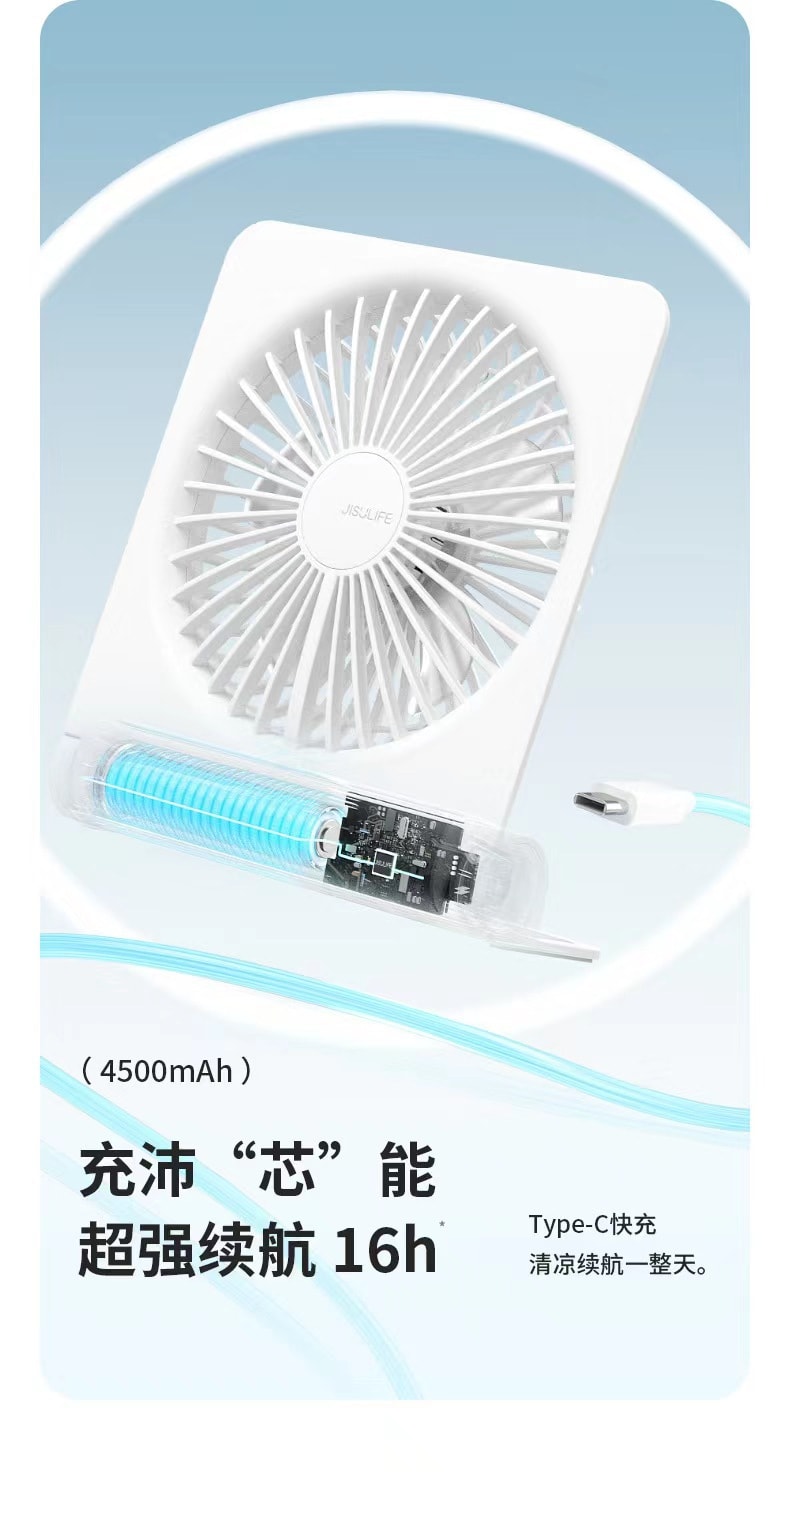 【明星李一桐代言】中国 JUSU 几素超薄便携式静音风扇 粉色 1件